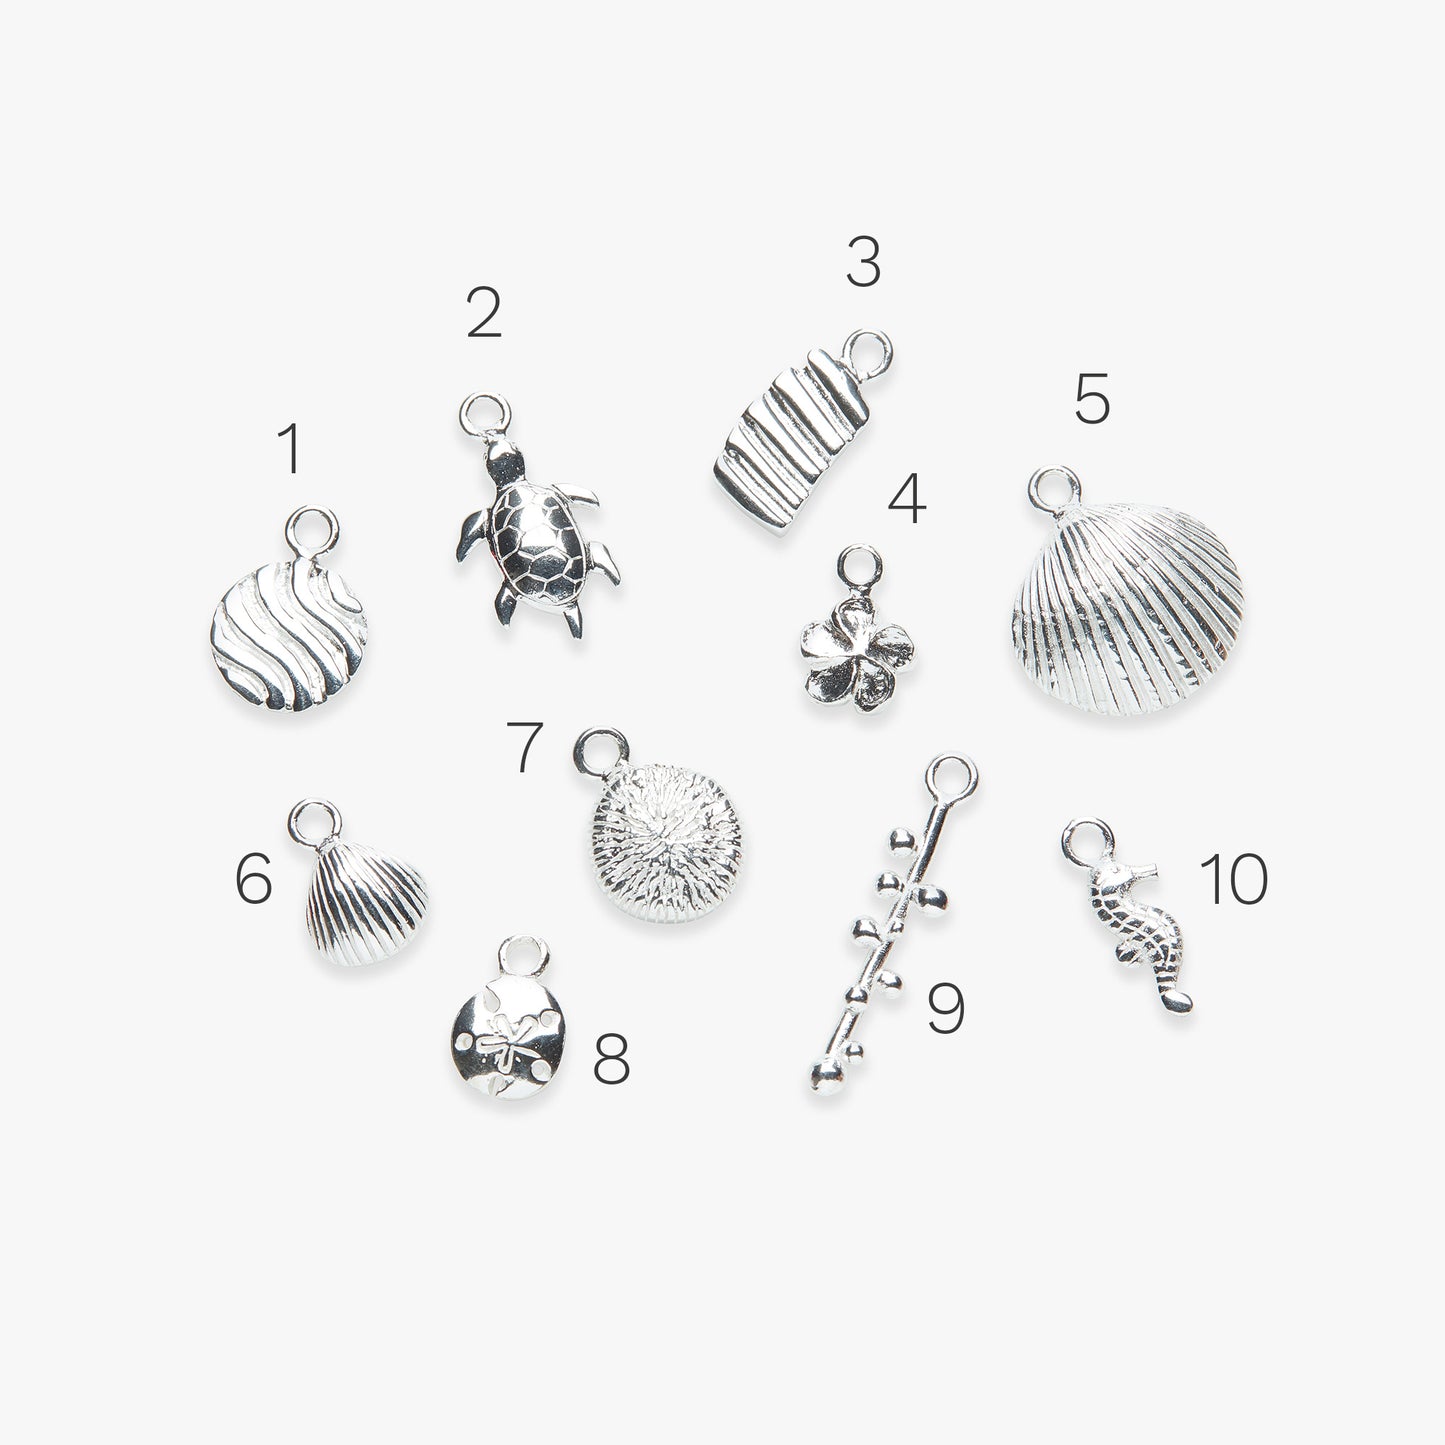 Add-on ocean inspired pendants silver